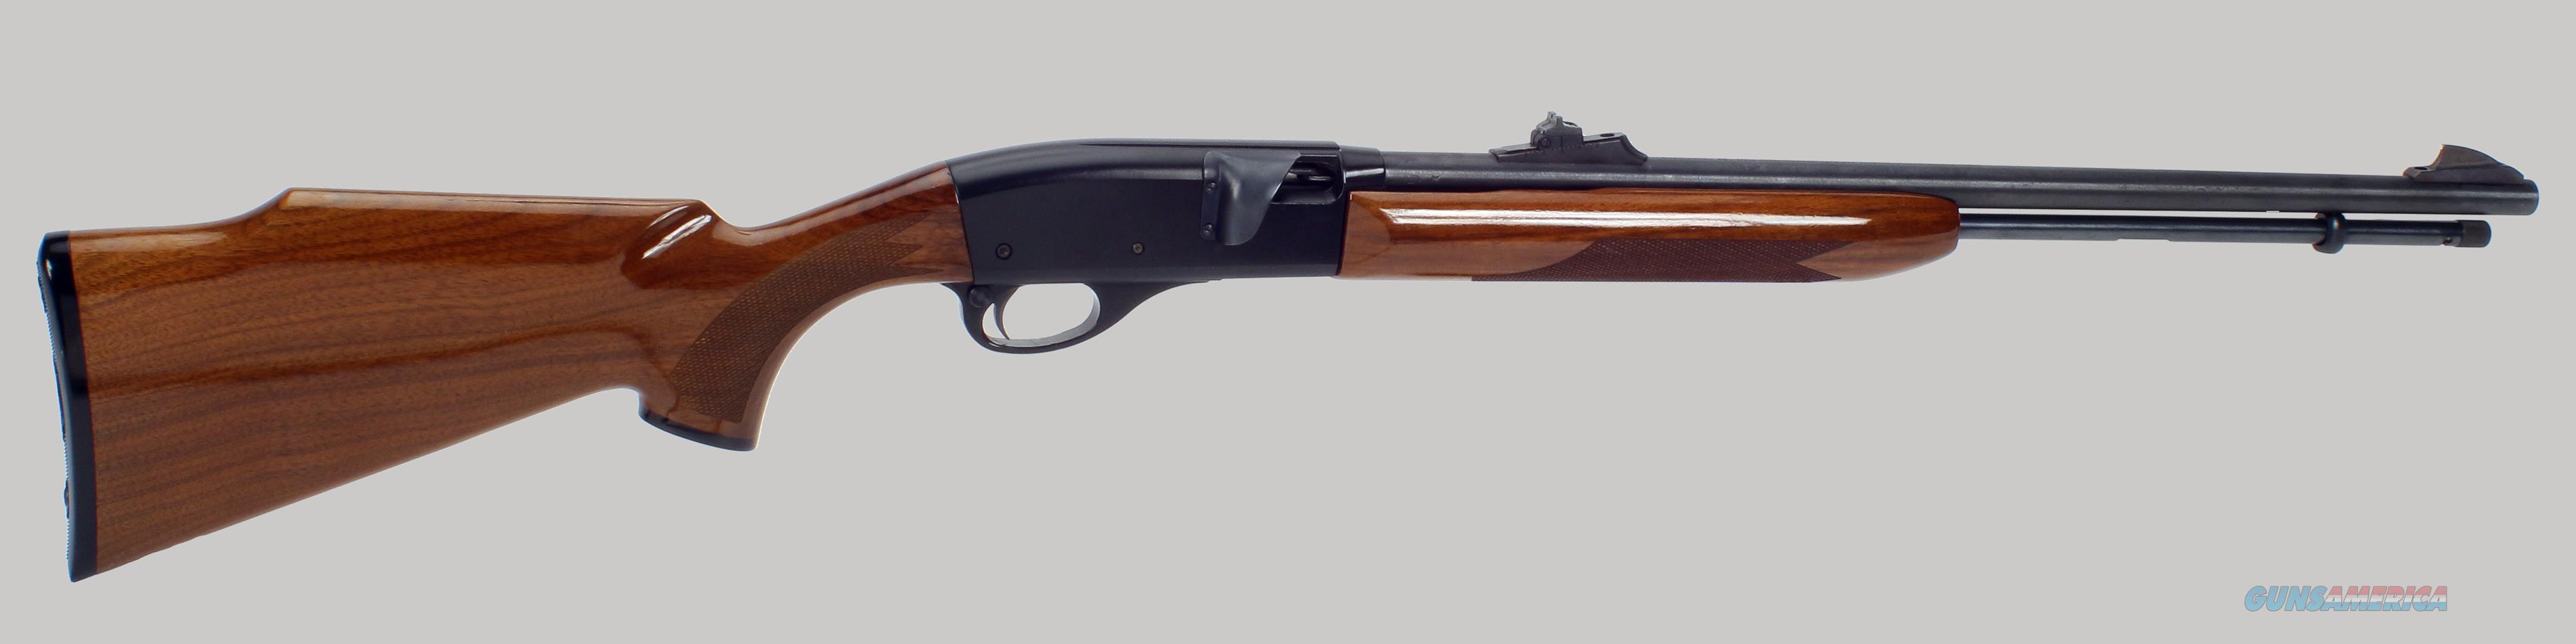 Remington Lr 552 Semi Auto 22lr Rifle For Sale